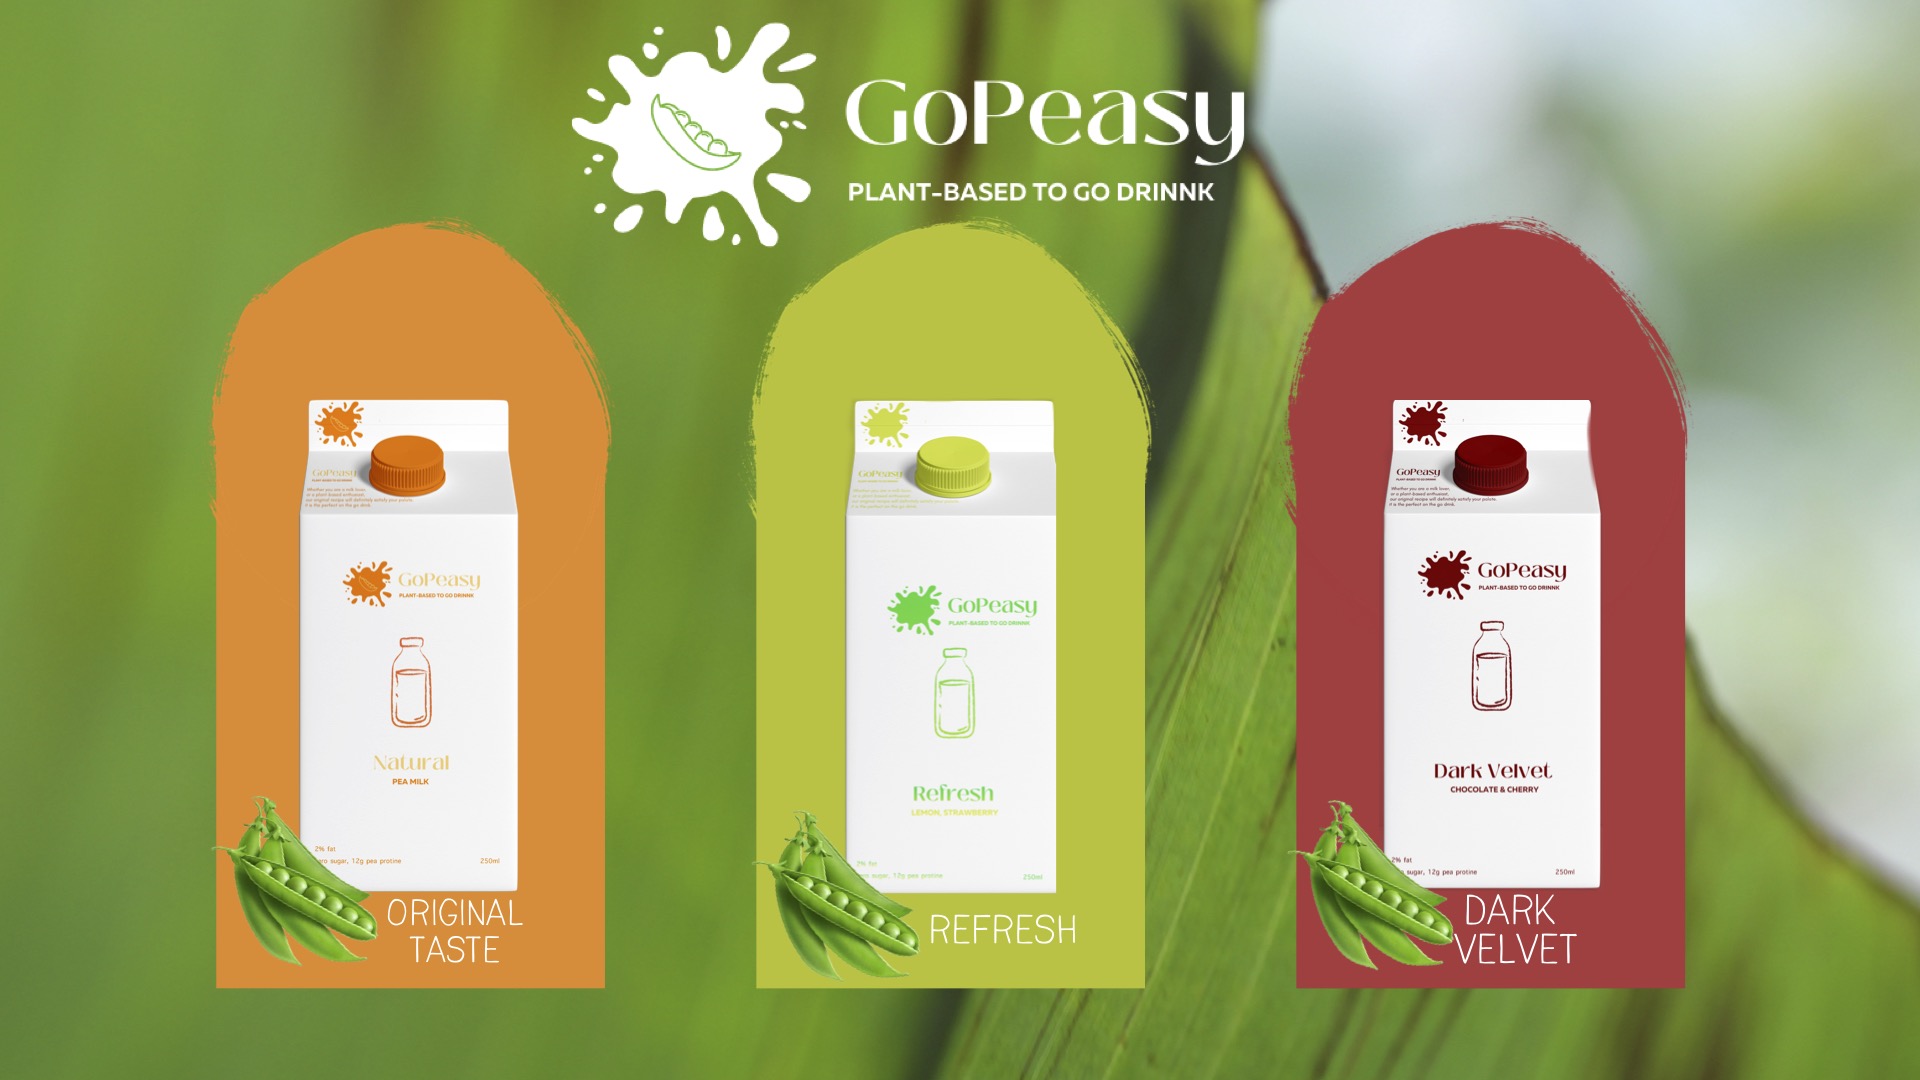 Die GoPeasy-Erbsenmilch wird in drei Geschmacksrichtungen erhältlich sein: Original, Zitrone-Erdbeere und Kirsch-Schokolade